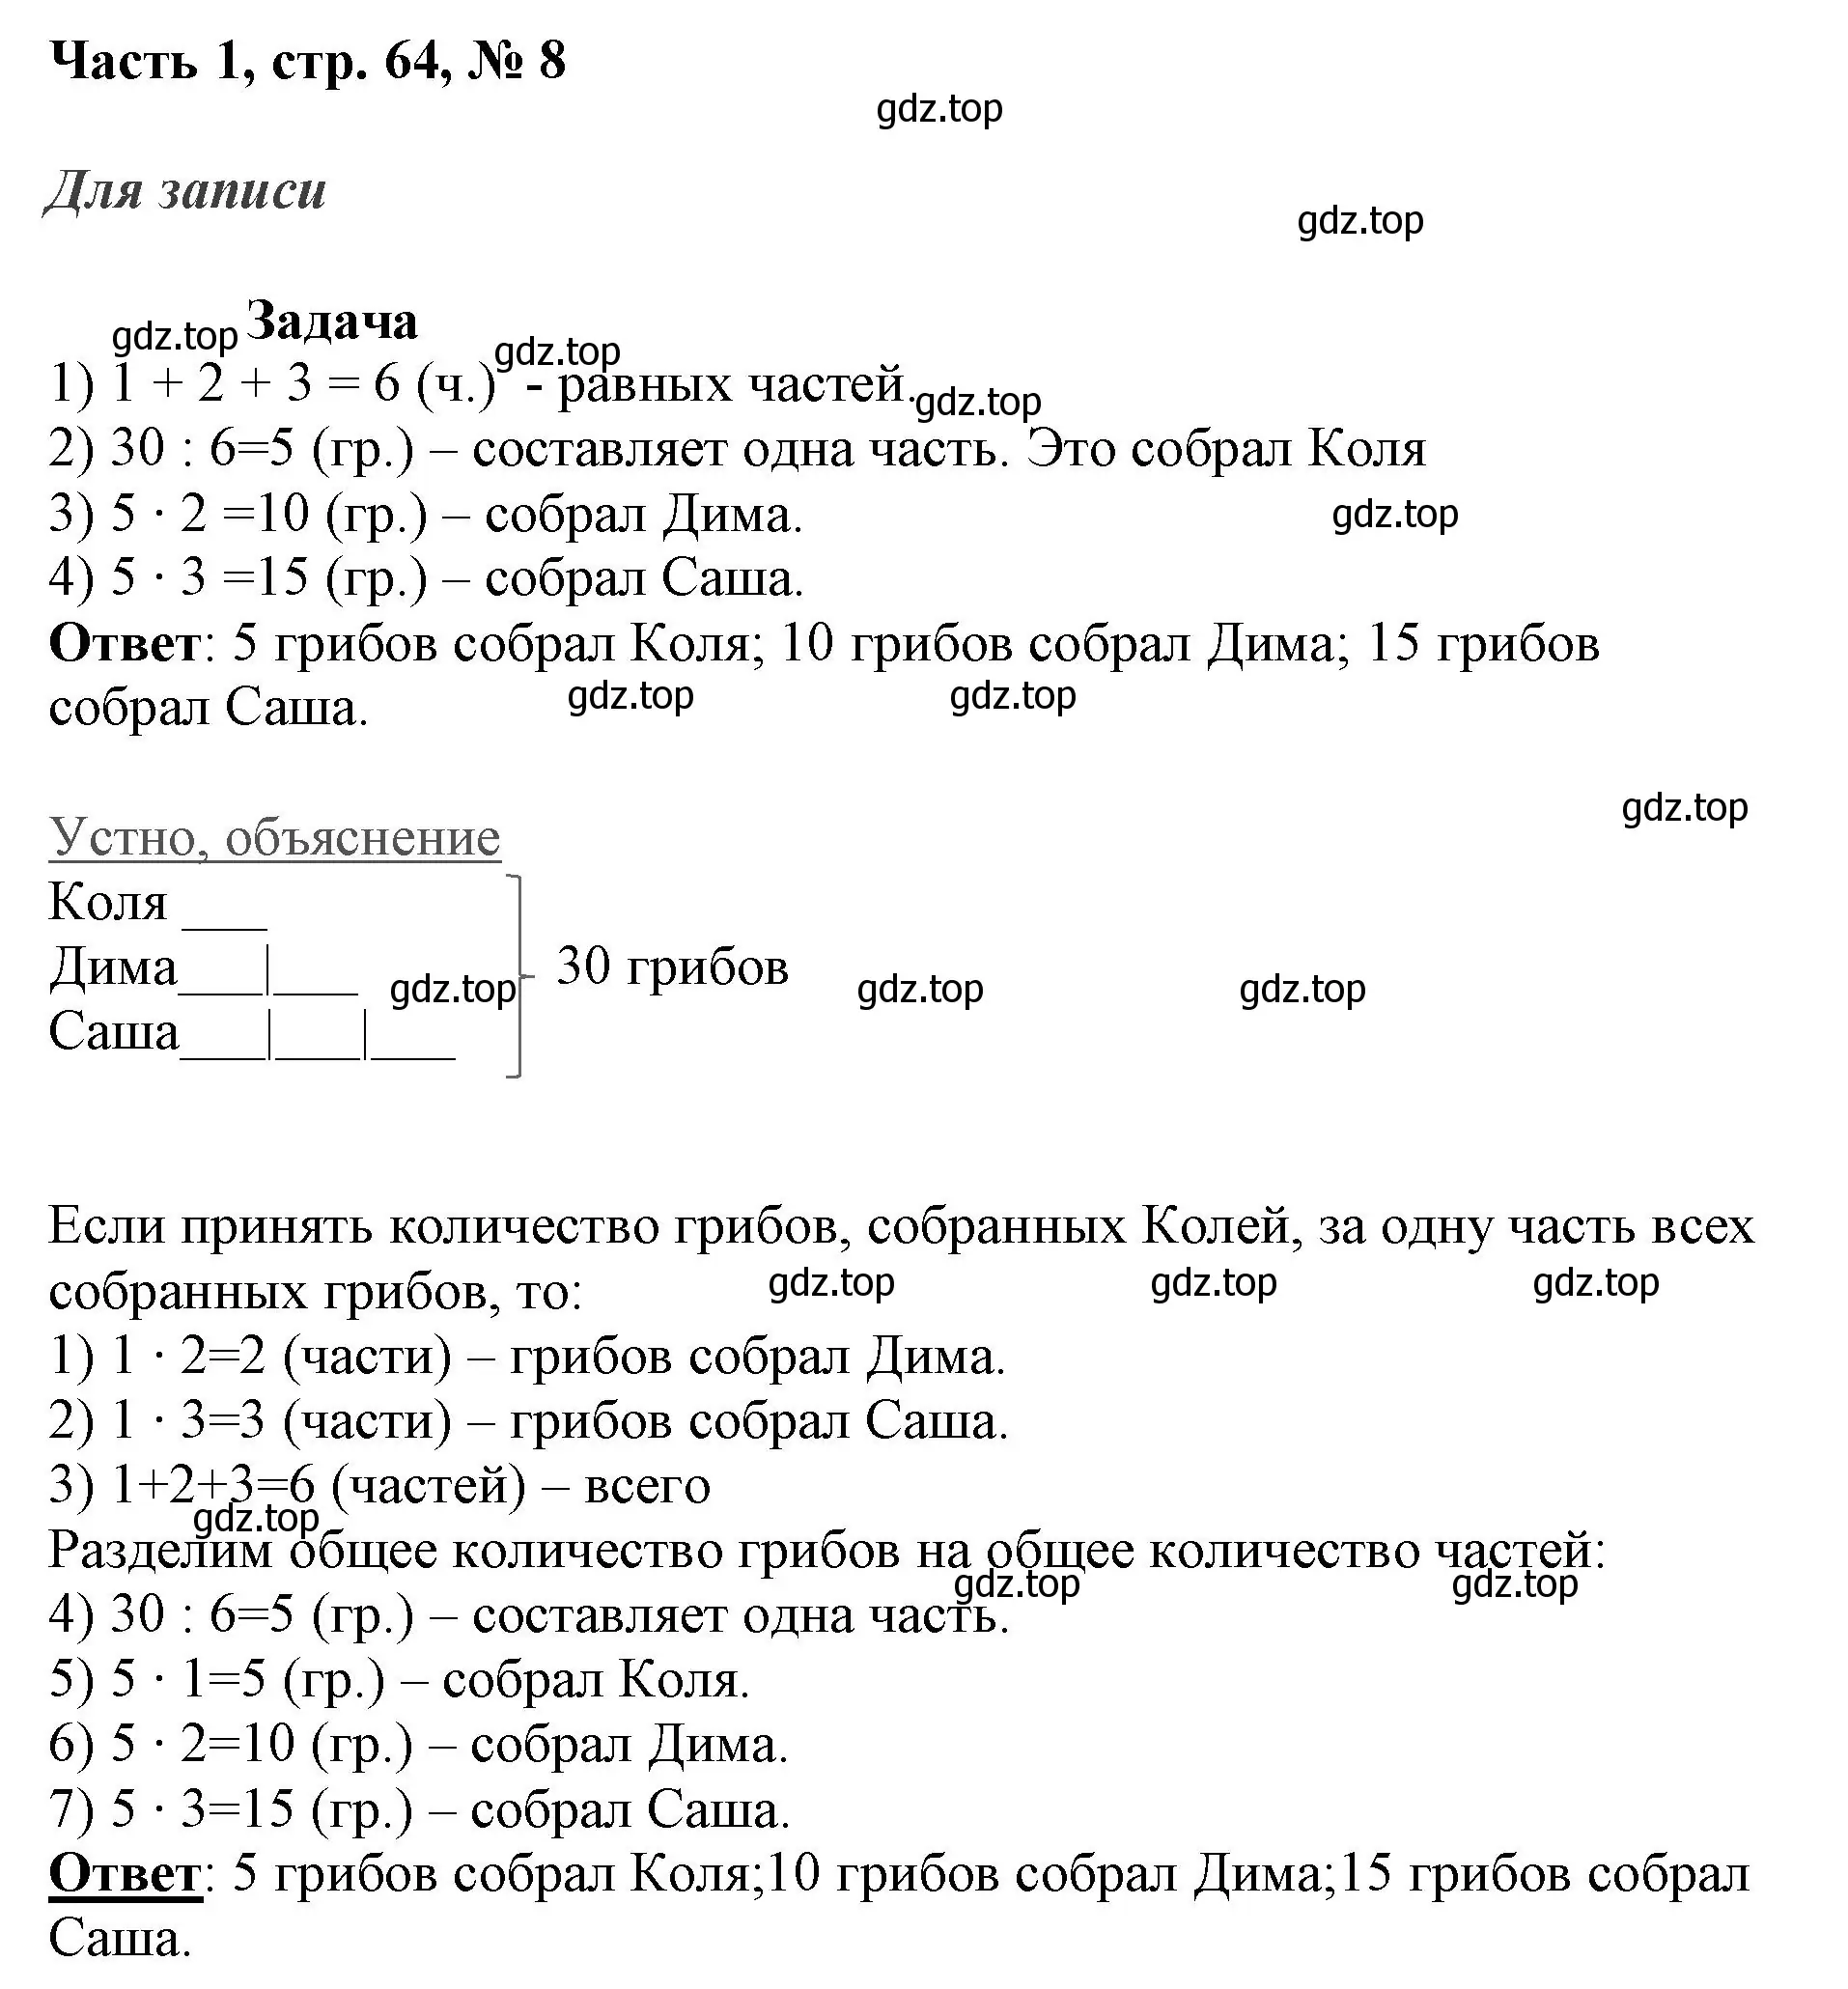 Решение номер 8 (страница 64) гдз по математике 3 класс Моро, Бантова, учебник 1 часть